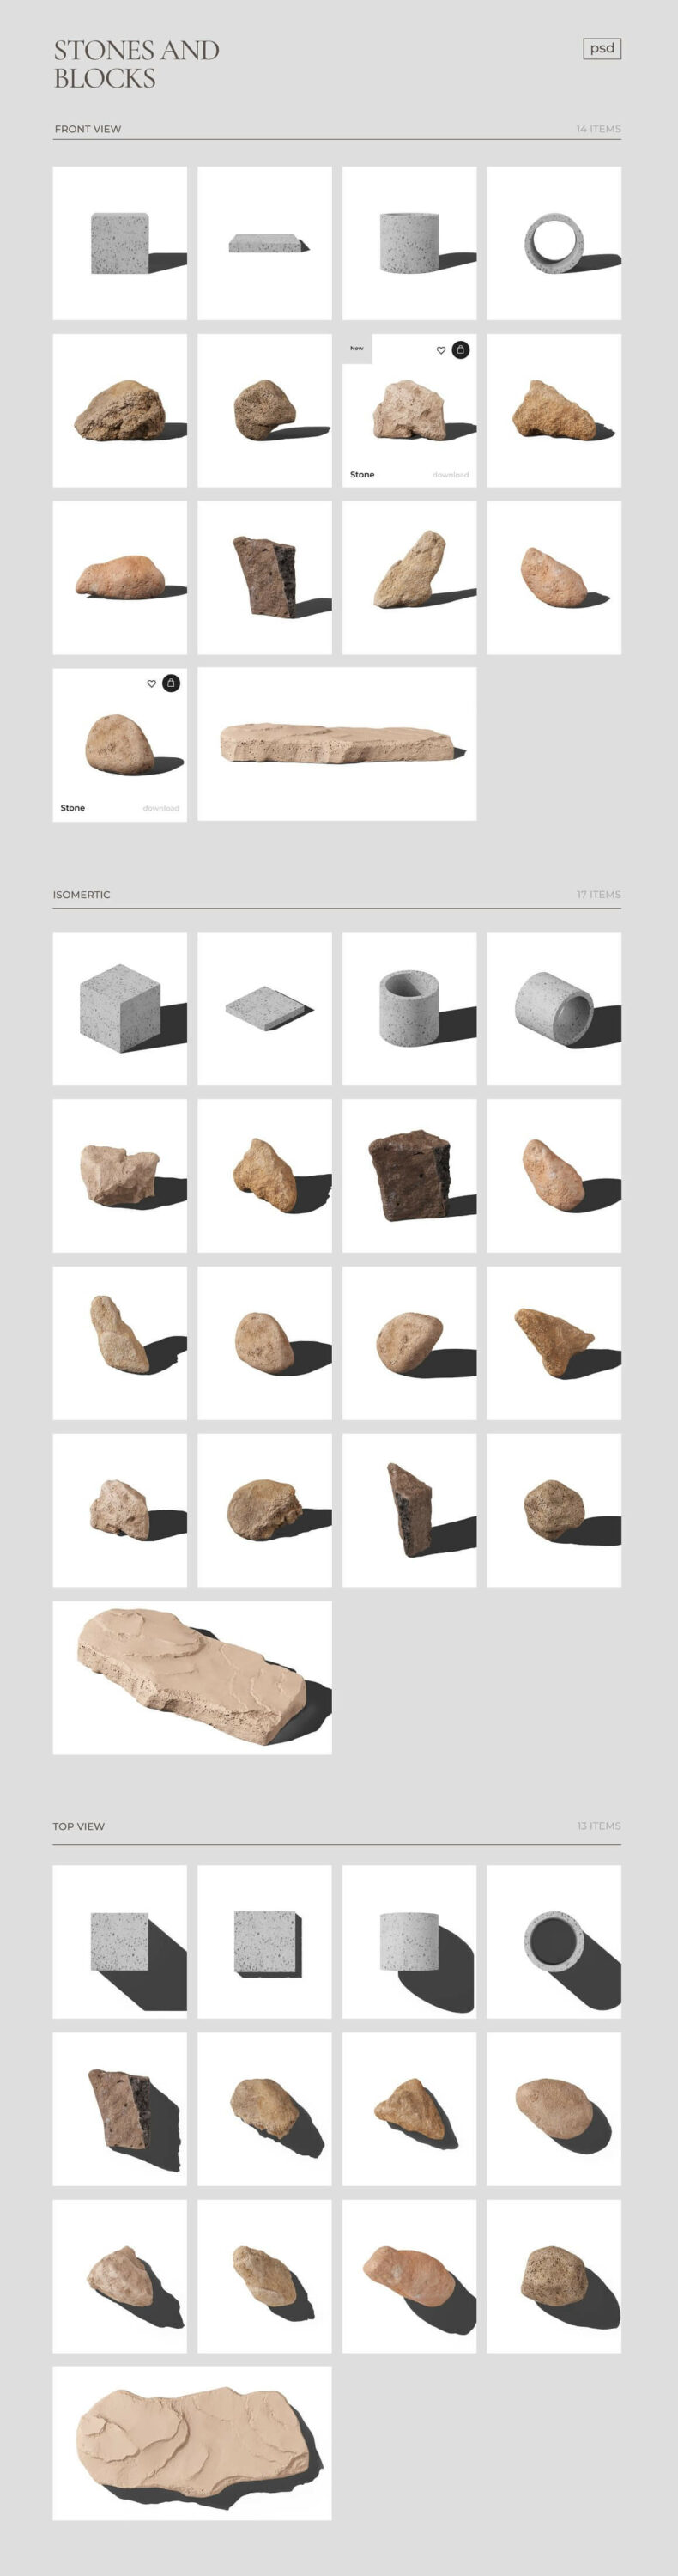 Stone and Blocks.